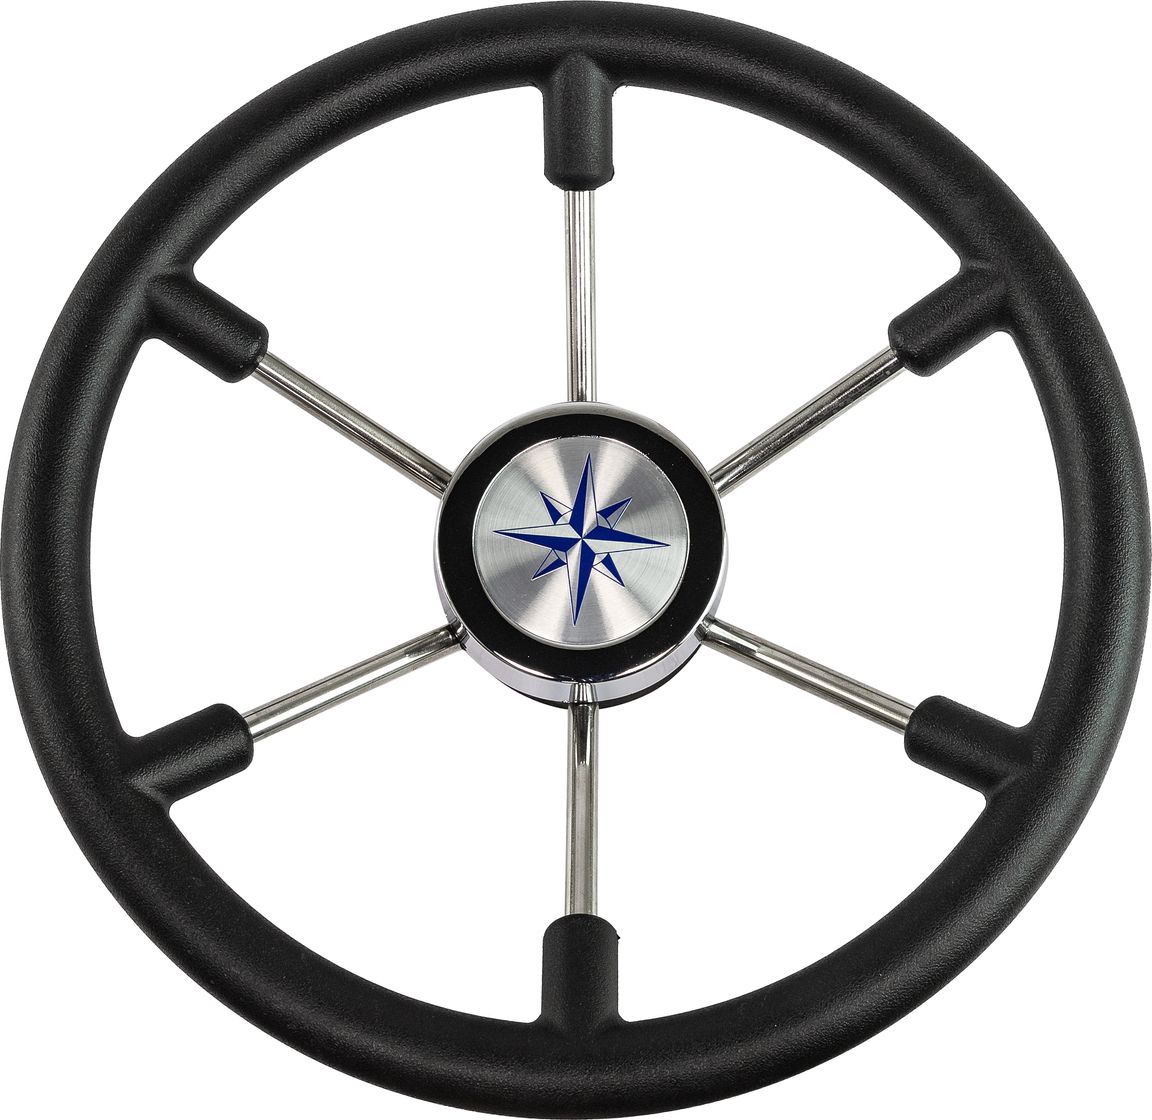 Рулевое колесо LEADER PLAST черный обод серебряные спицы д. 360 мм VN8360-01